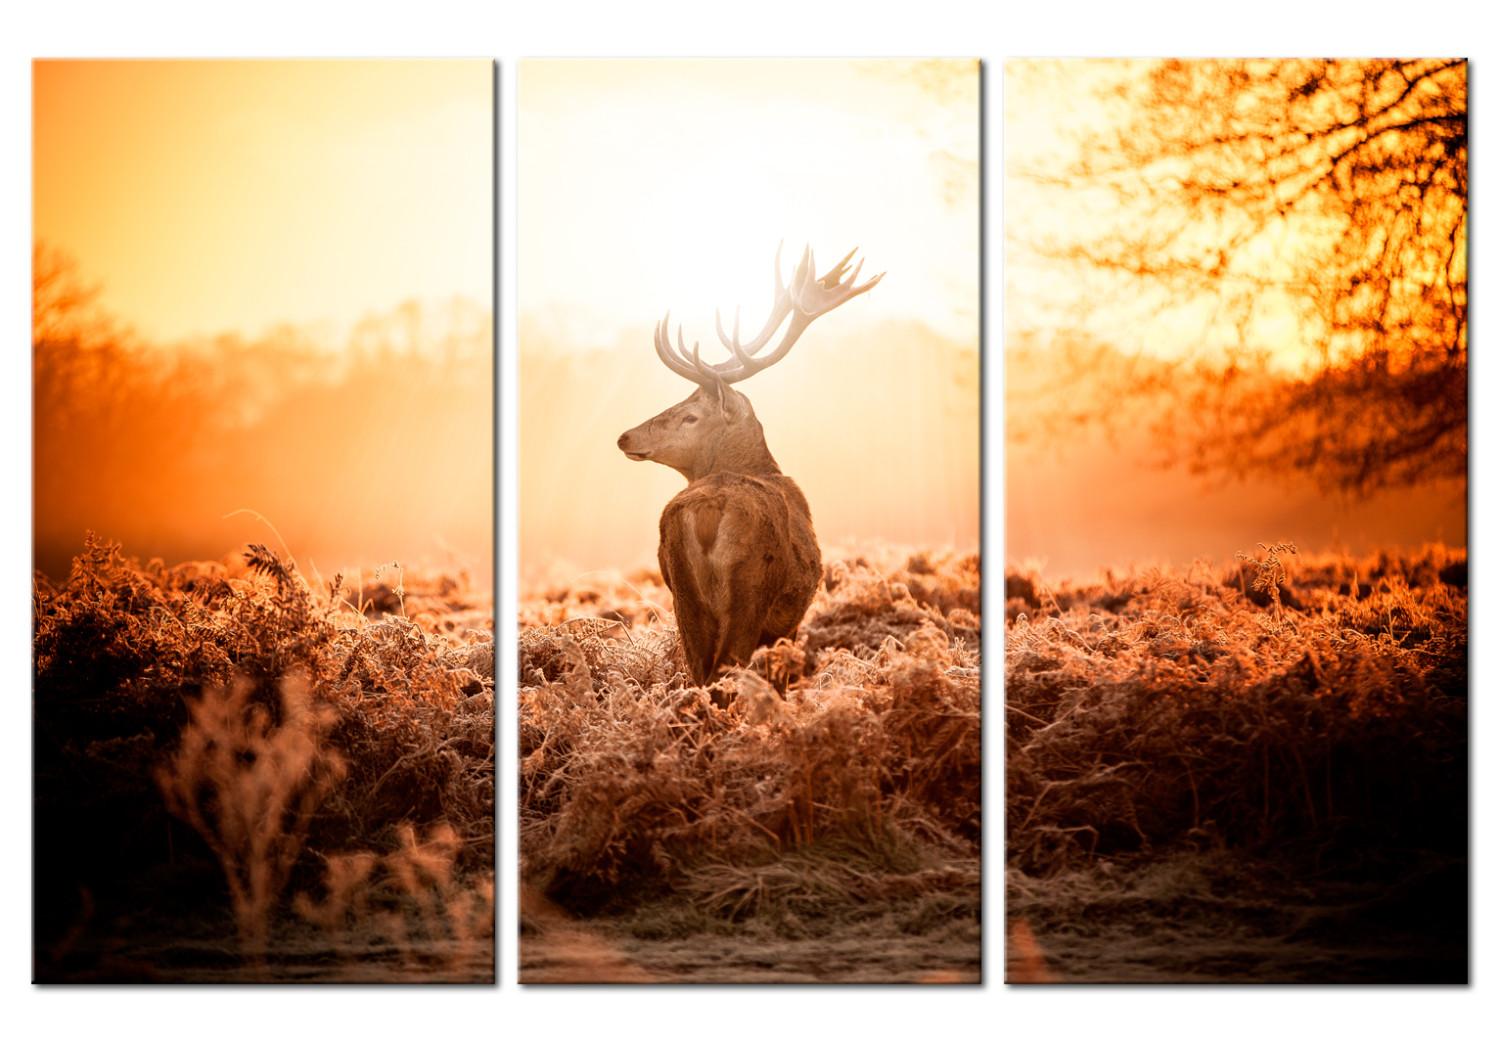 Cuadro moderno Ciervo al sol (3 piezas) - ciervo solitario en un campo pintoresco